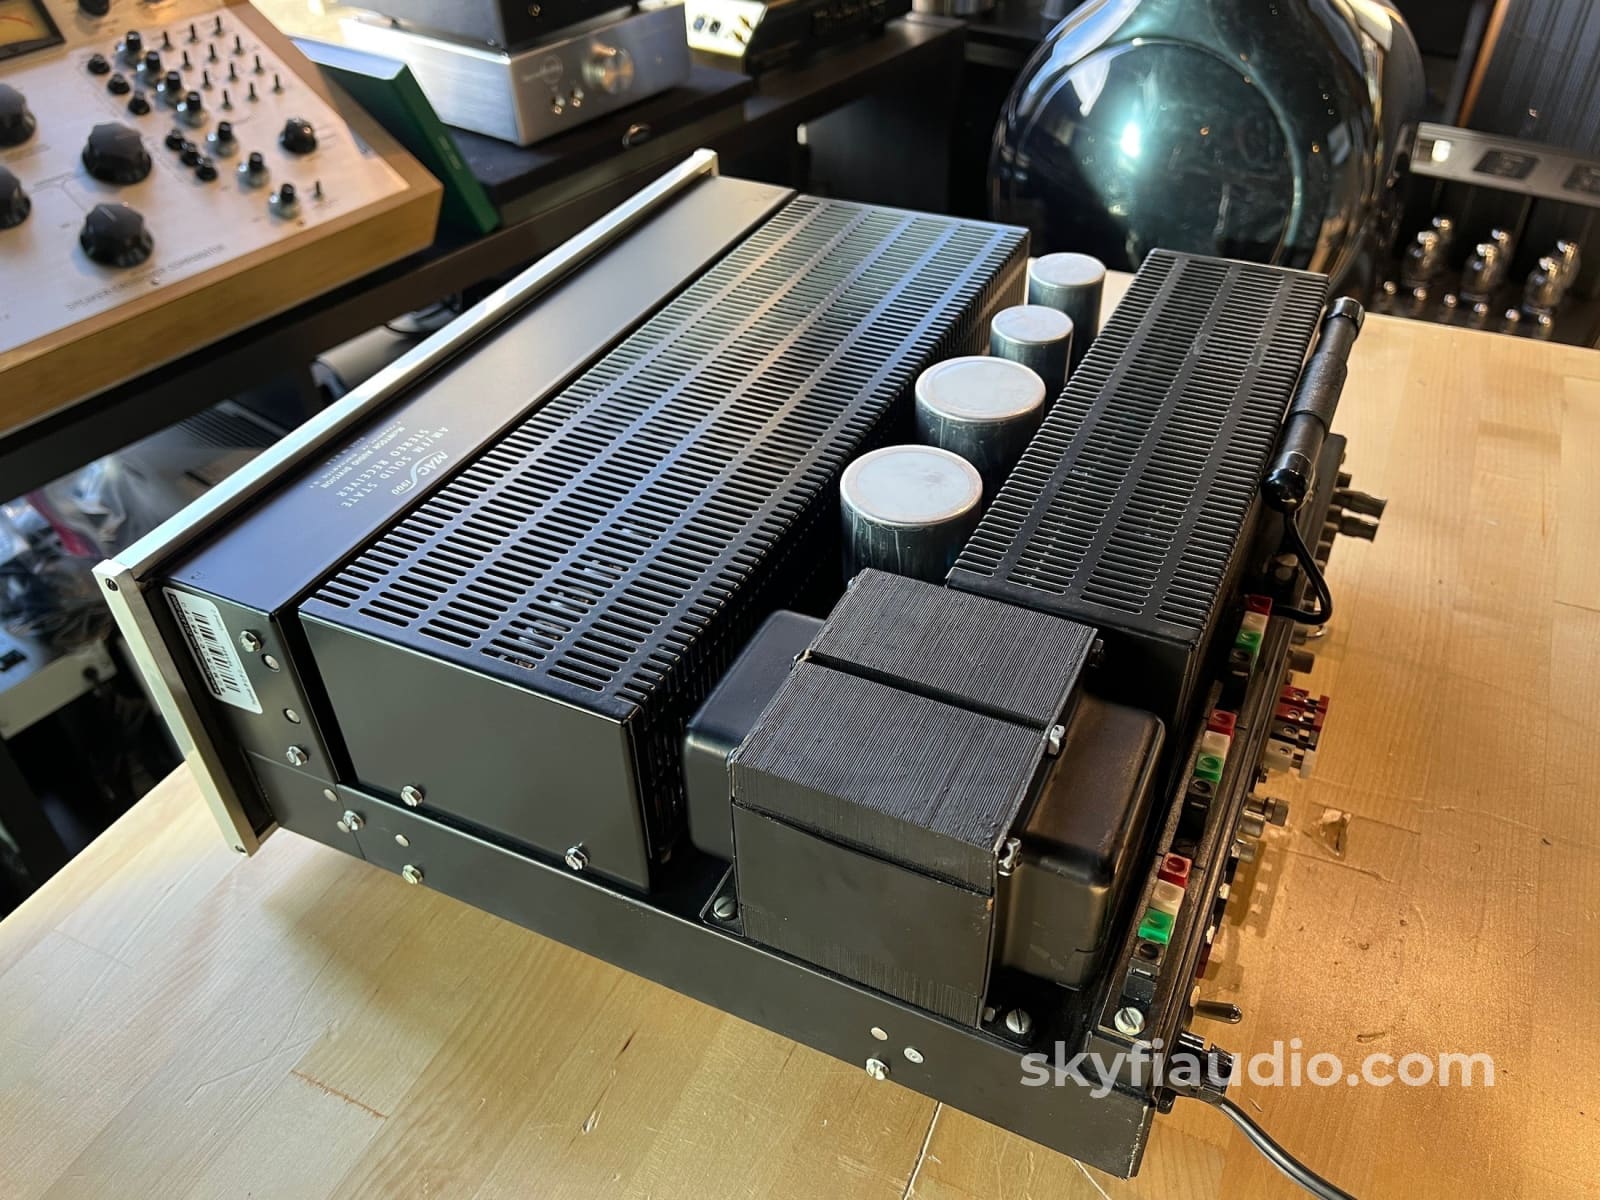 Mcintosh Mac1900 The Original High-End Stereo Receiver - Rare Survivor Condition Integrated